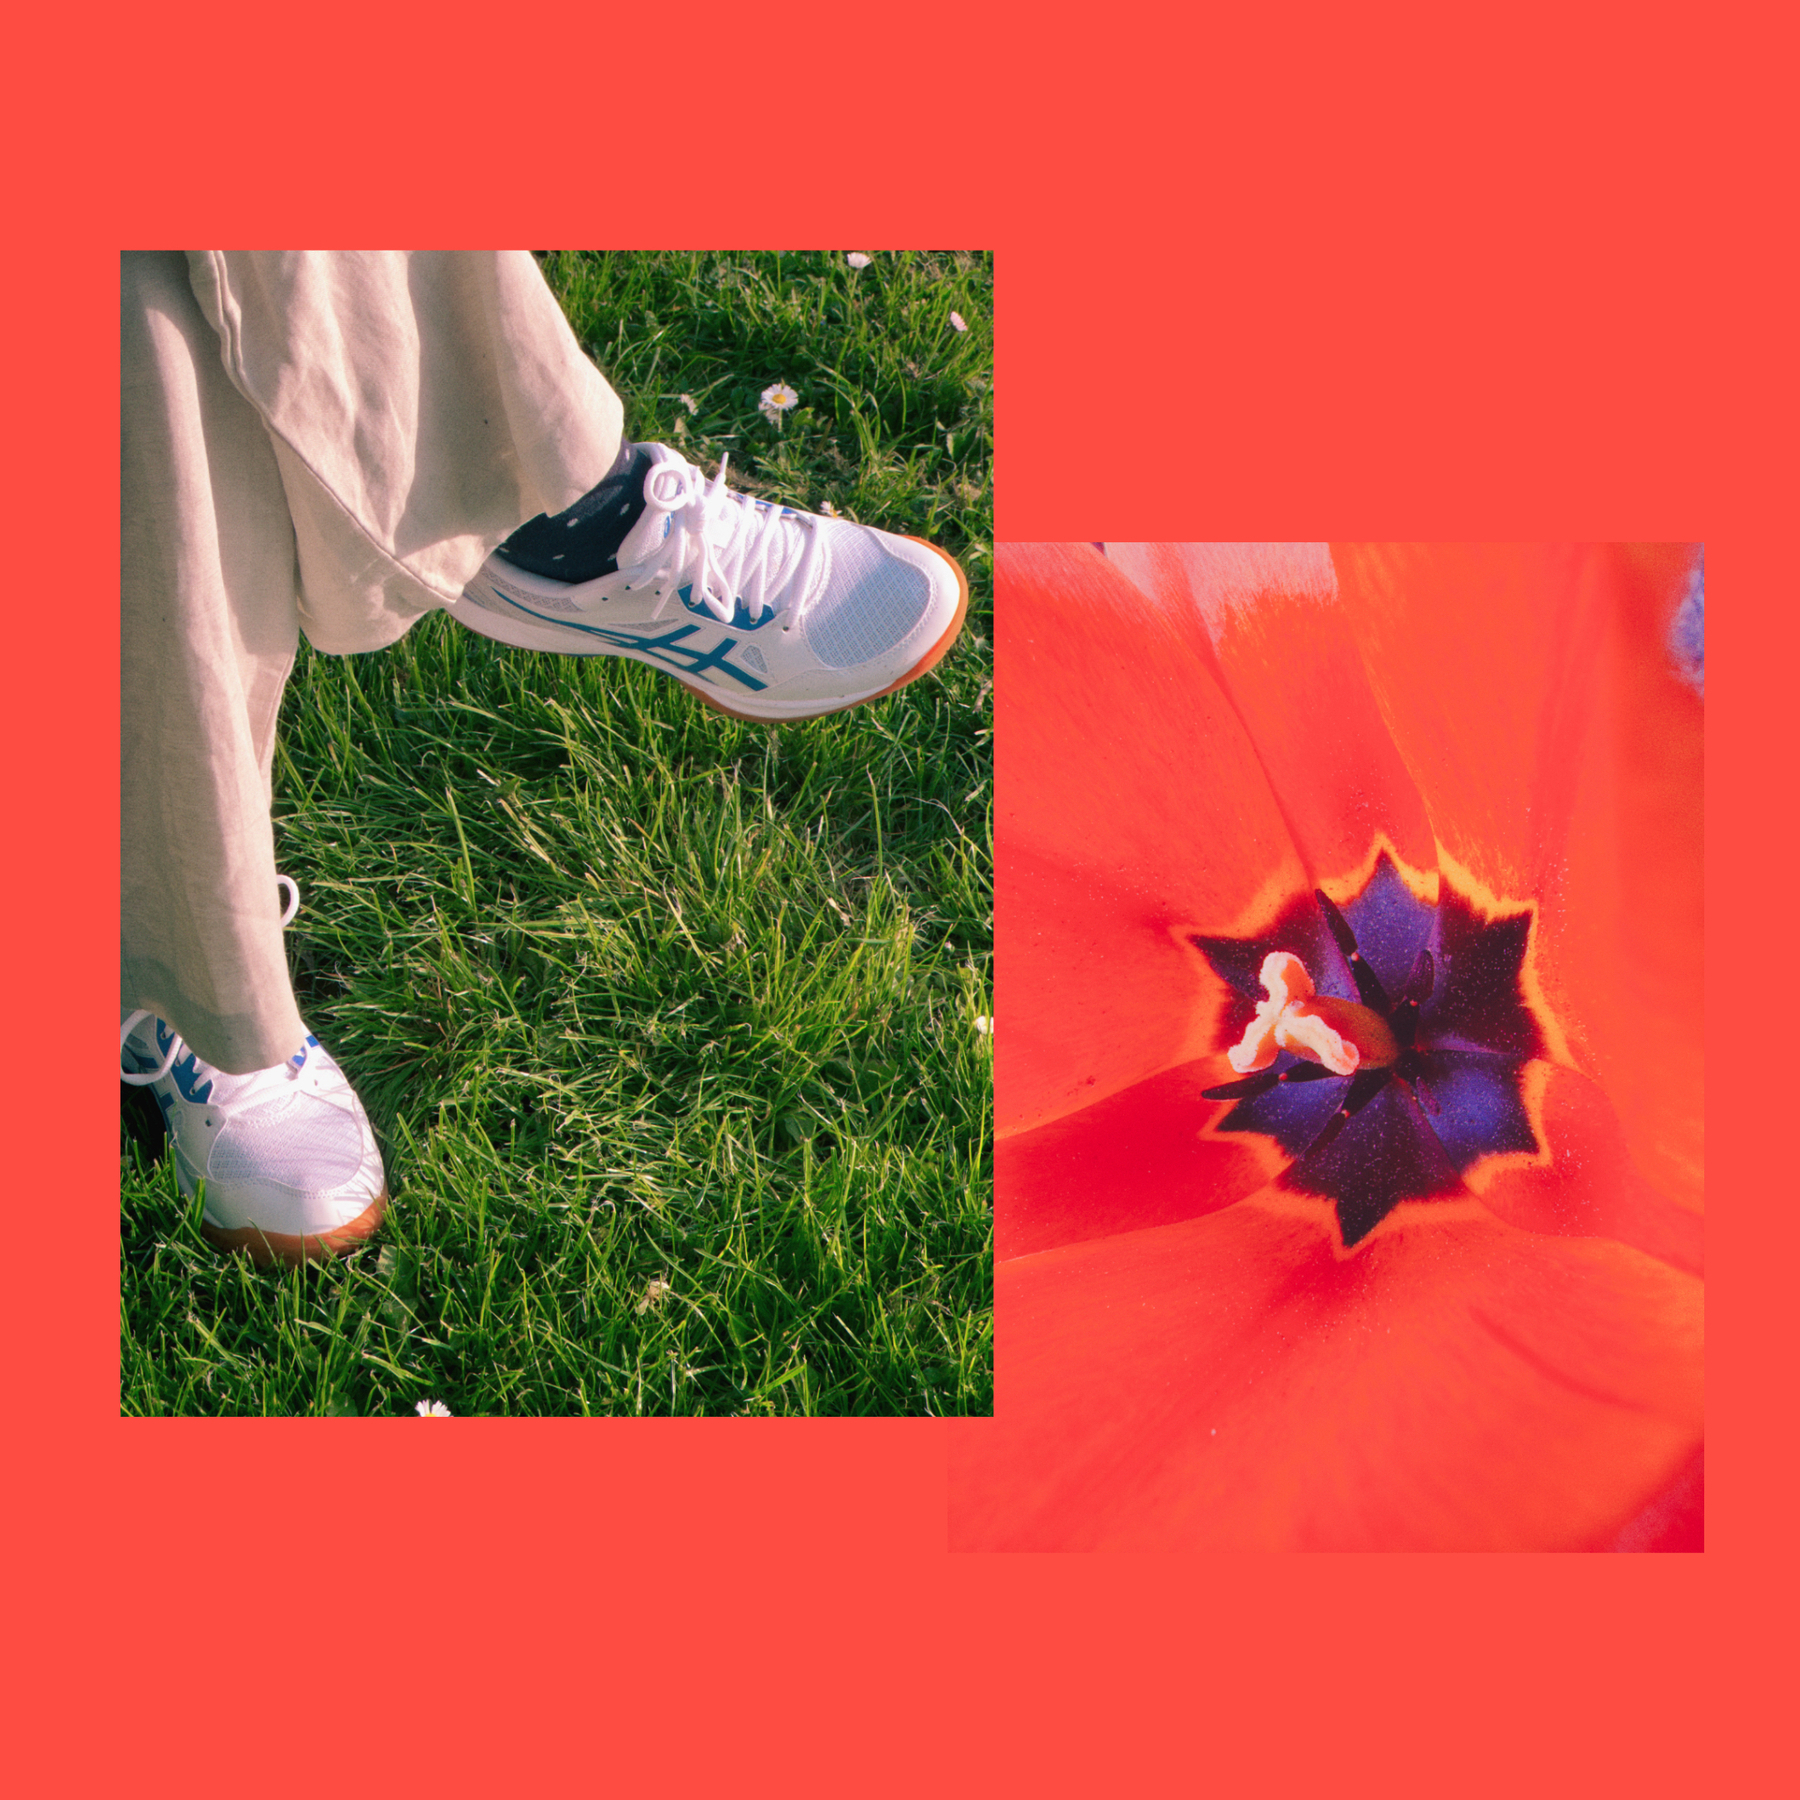 Zwei Bilder auf rot-orangenem Grund: Im linken Bild sieht man zwei Beine in Leinenhose samt dunkelblauen Socken und weißen Turnschuhen auf einer sattgrünen Wiese. Das rechte Bild zeigt eine Blüte in der Farbe des Hintergrunds.